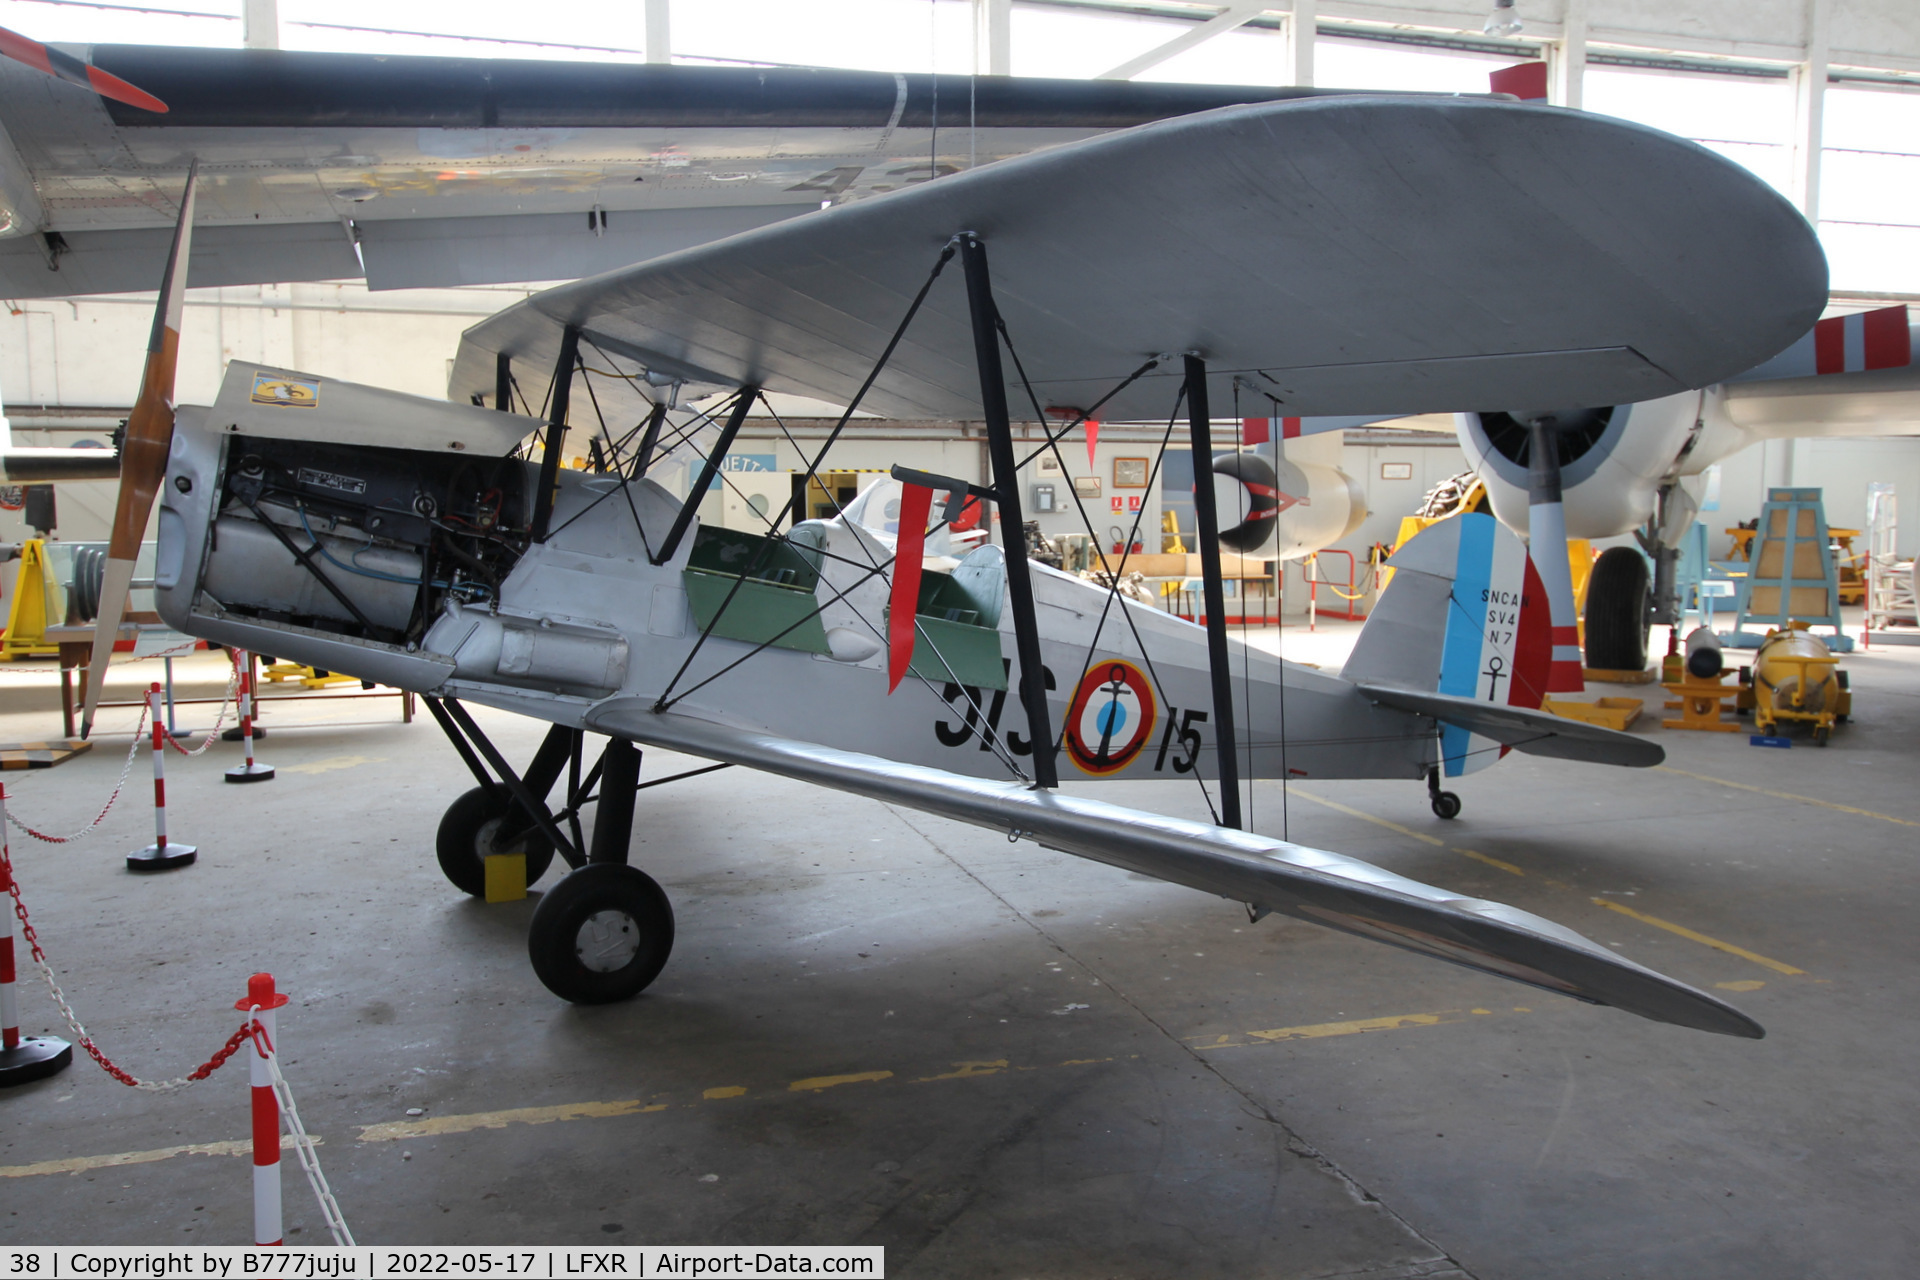 38, Stampe-Vertongen SV-4C C/N 38, at Musée de l'Aéronautique Navale